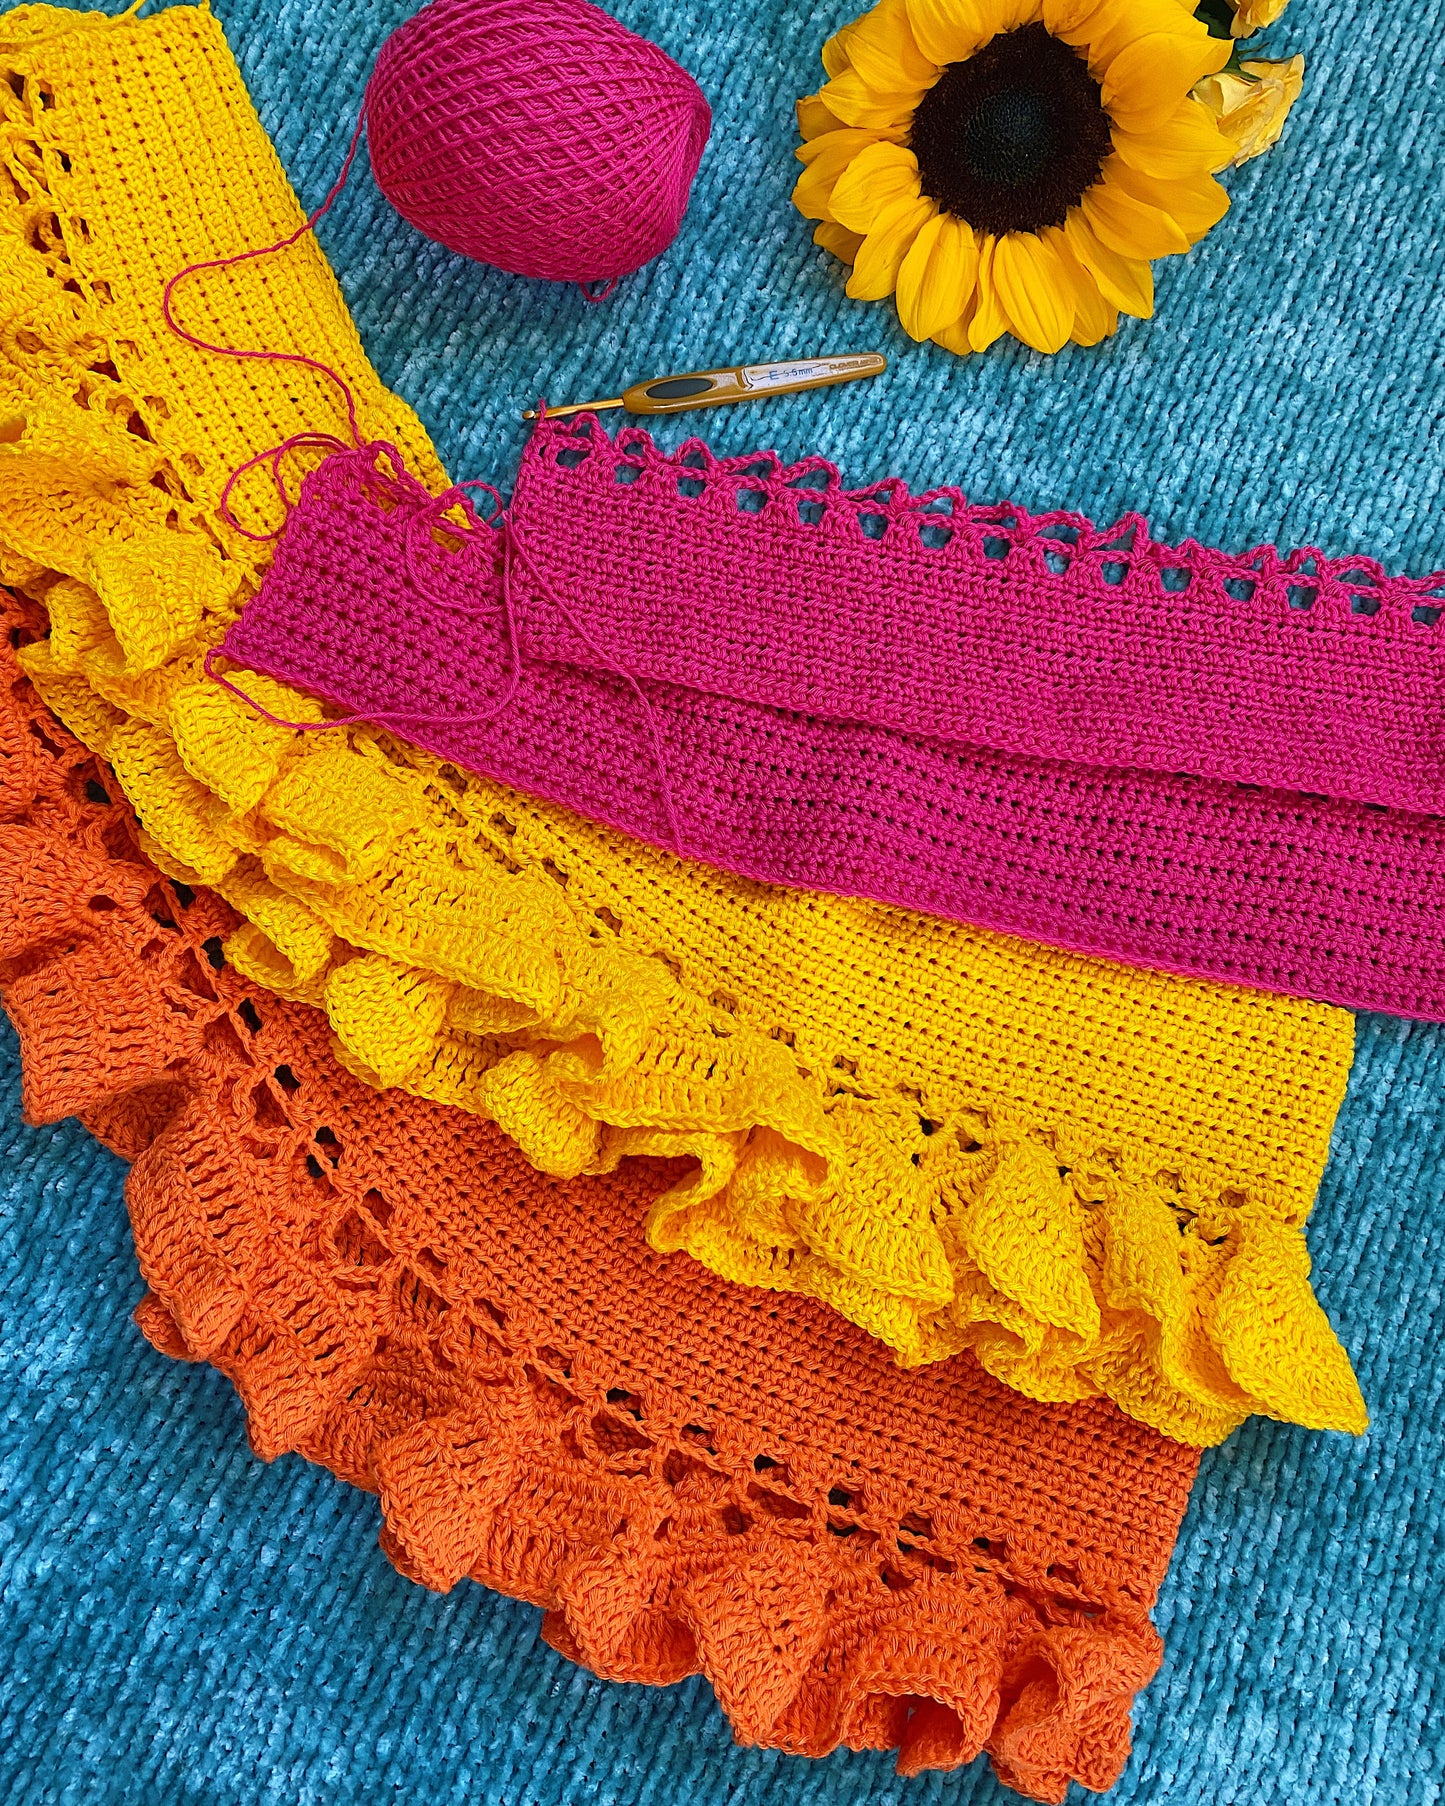 CROCHET PATTERN - Ruffle Dress Crochet Pattern